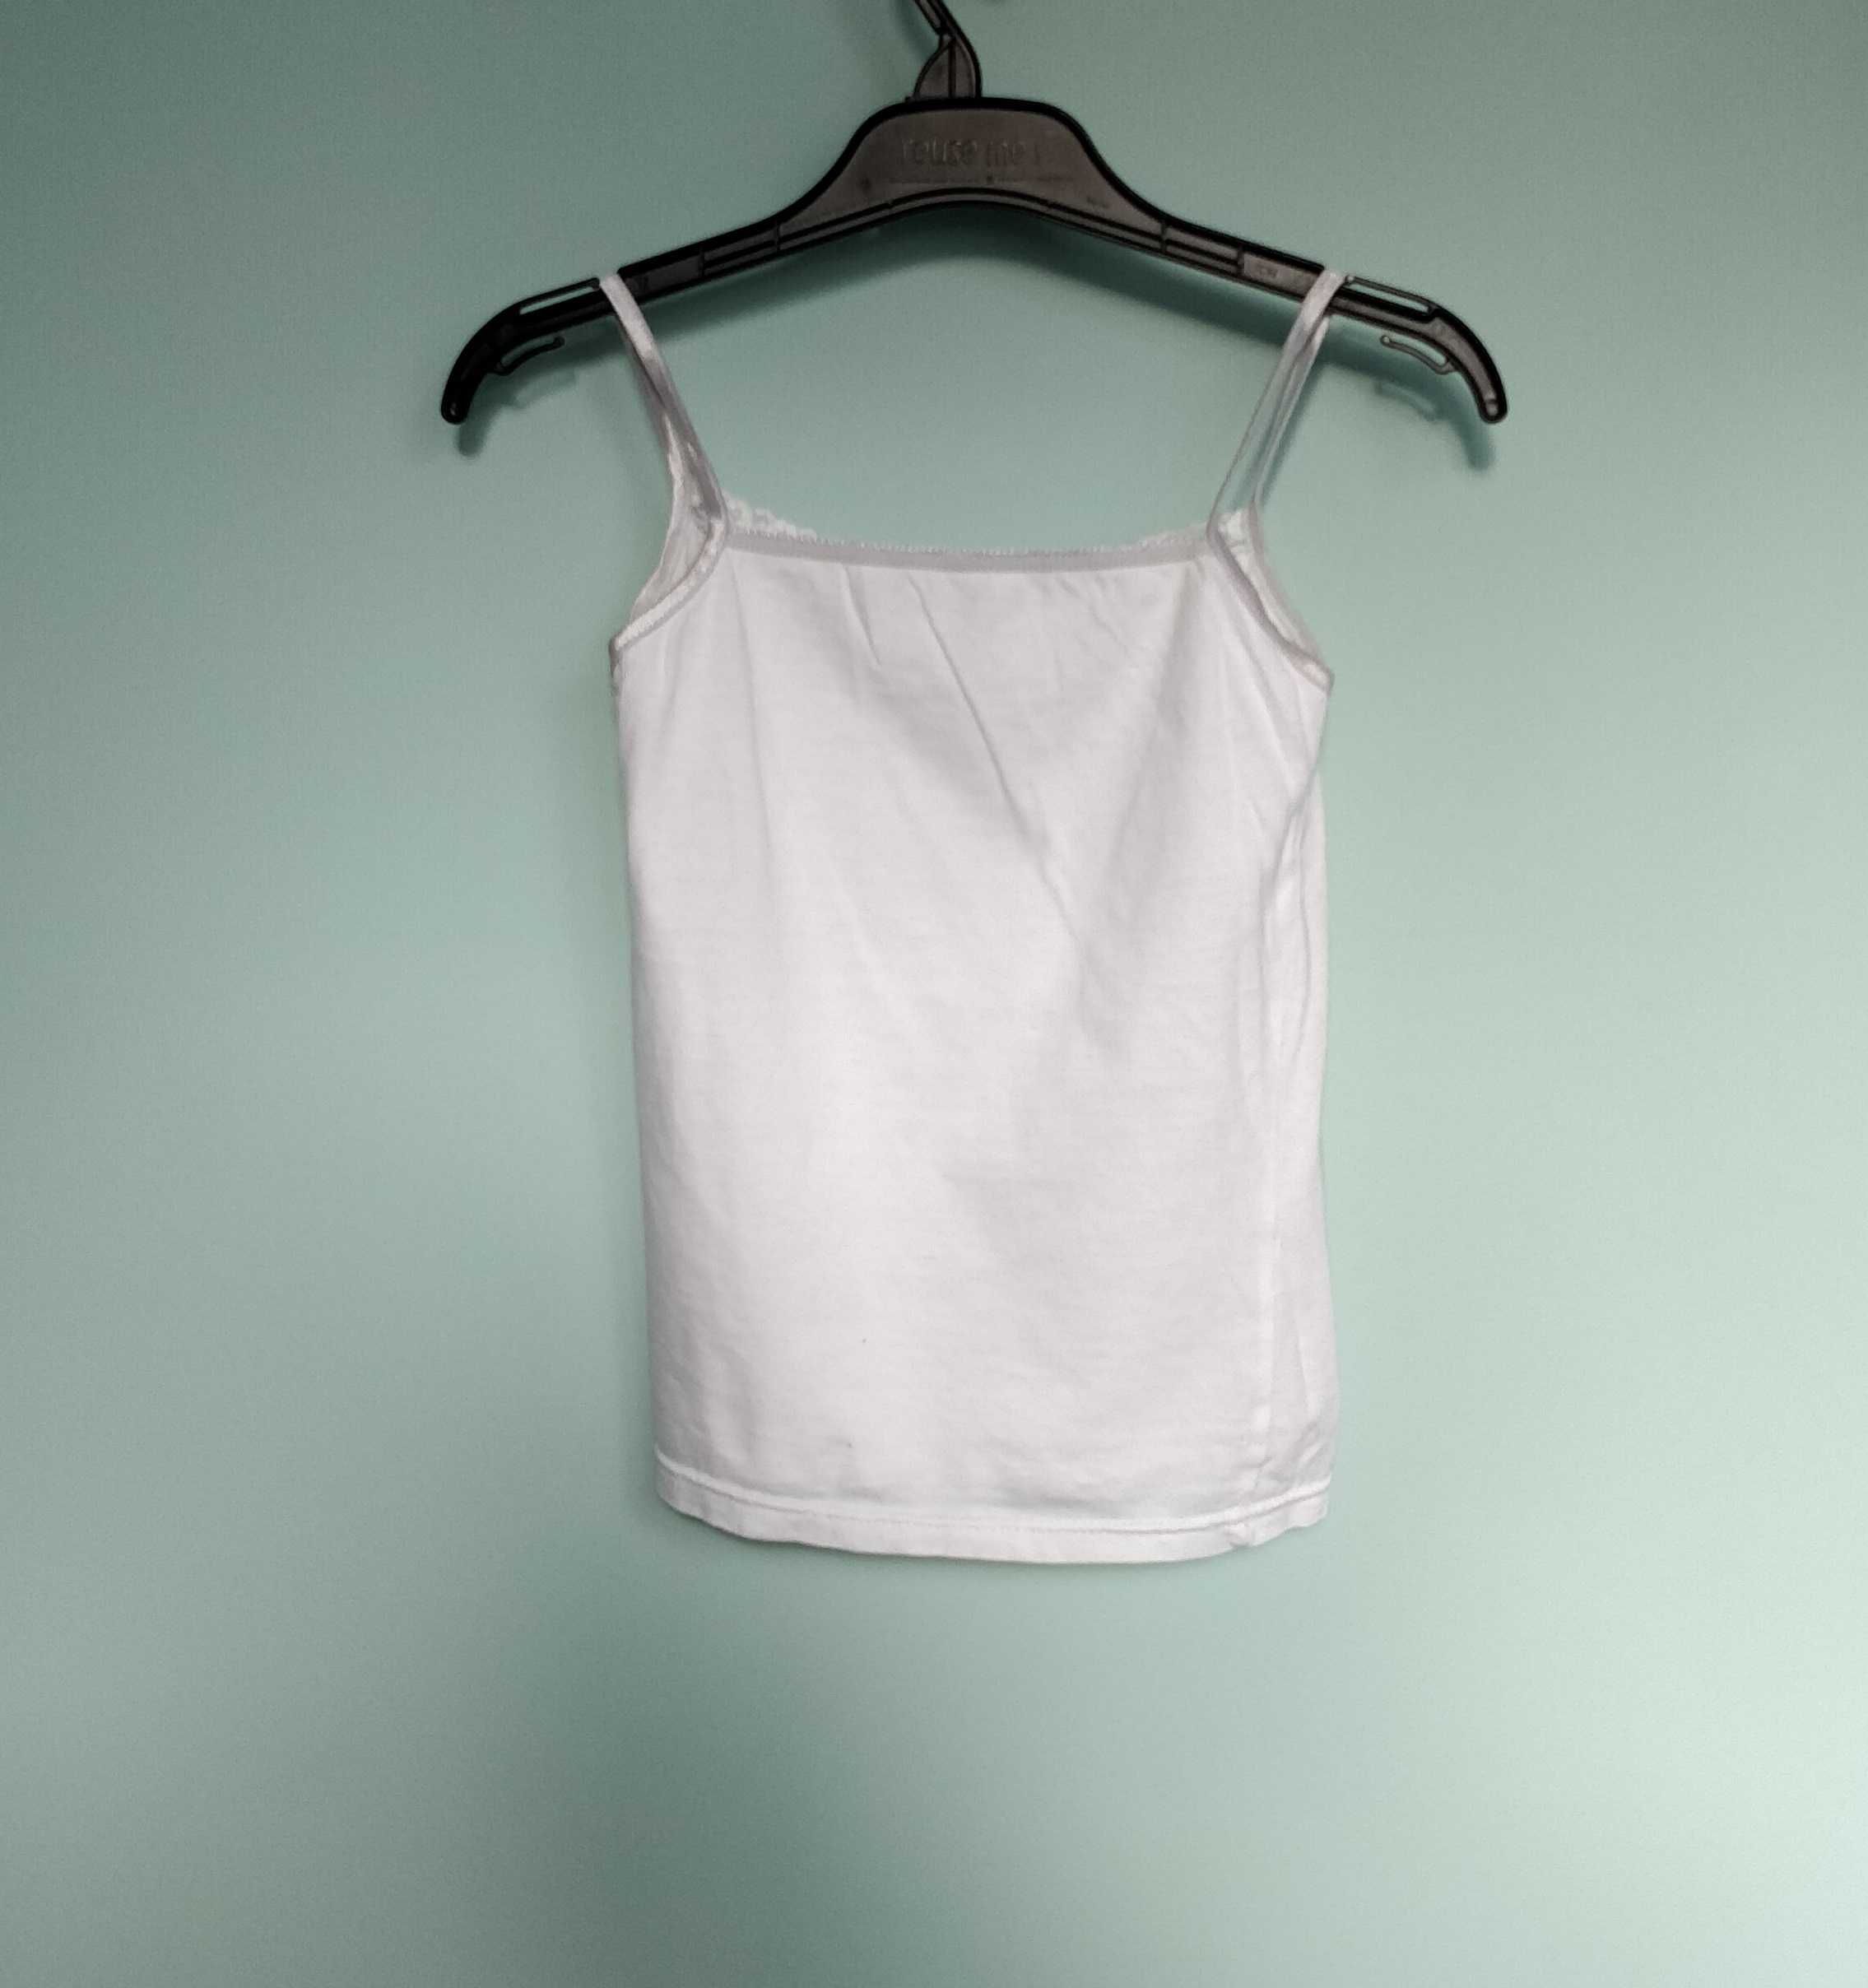 Podkoszulka, bluzeczka, rozmiar 116 - 122 cm, dziewczęca z koronką.